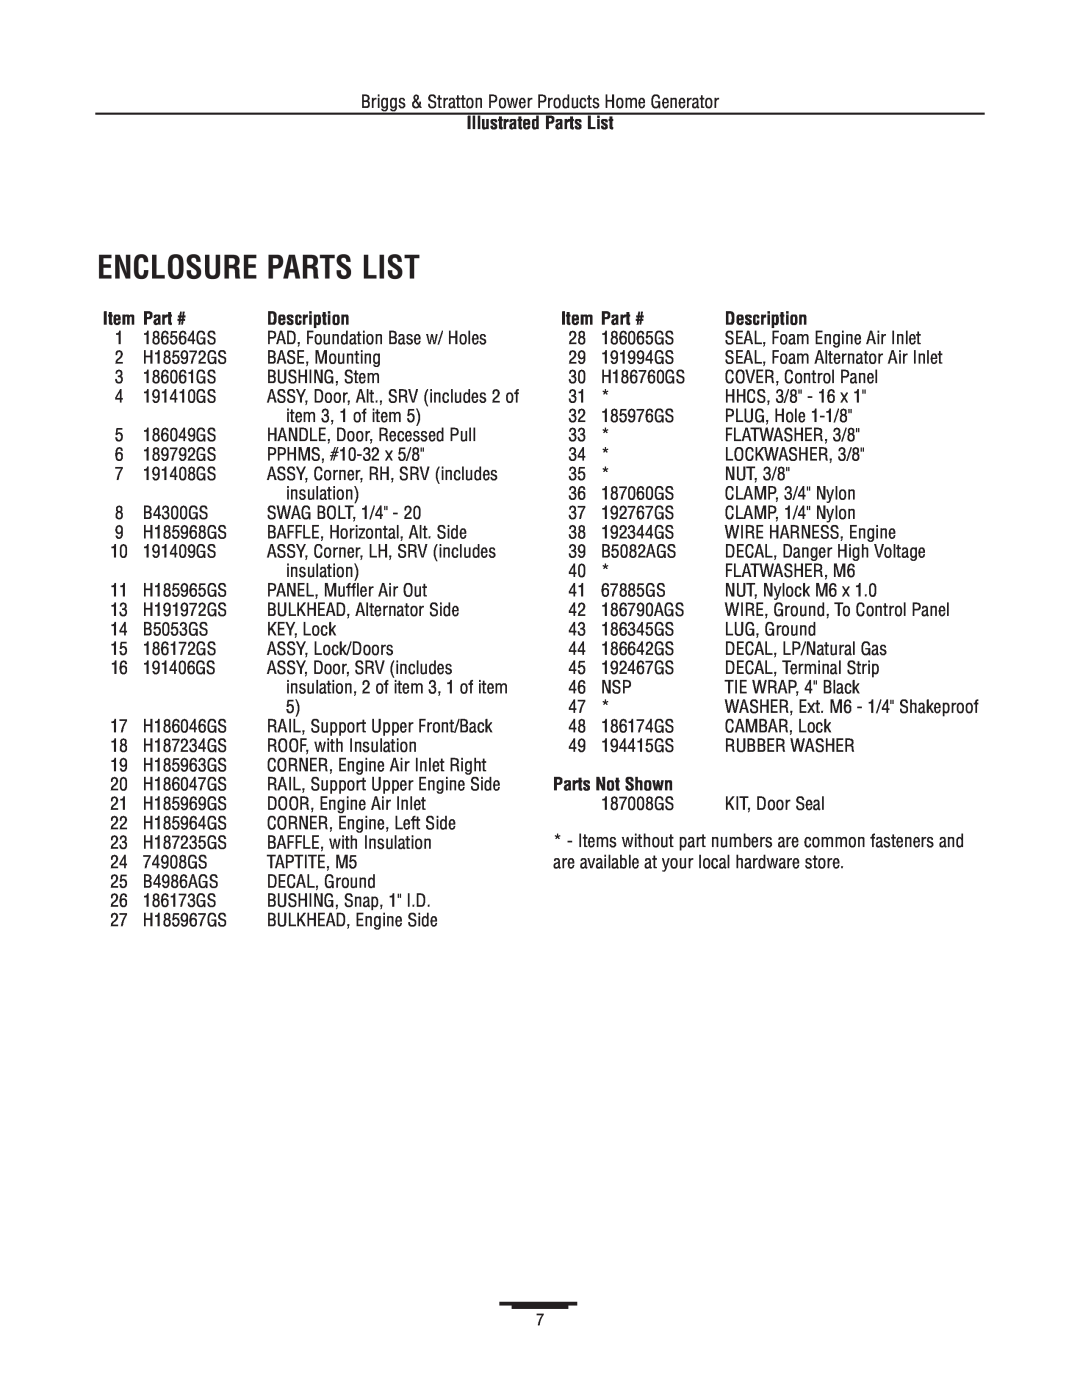 Briggs & Stratton 1815 manual Enclosure Parts List, Item, Parts Not Shown, Illustrated Parts List, Part #, Description 